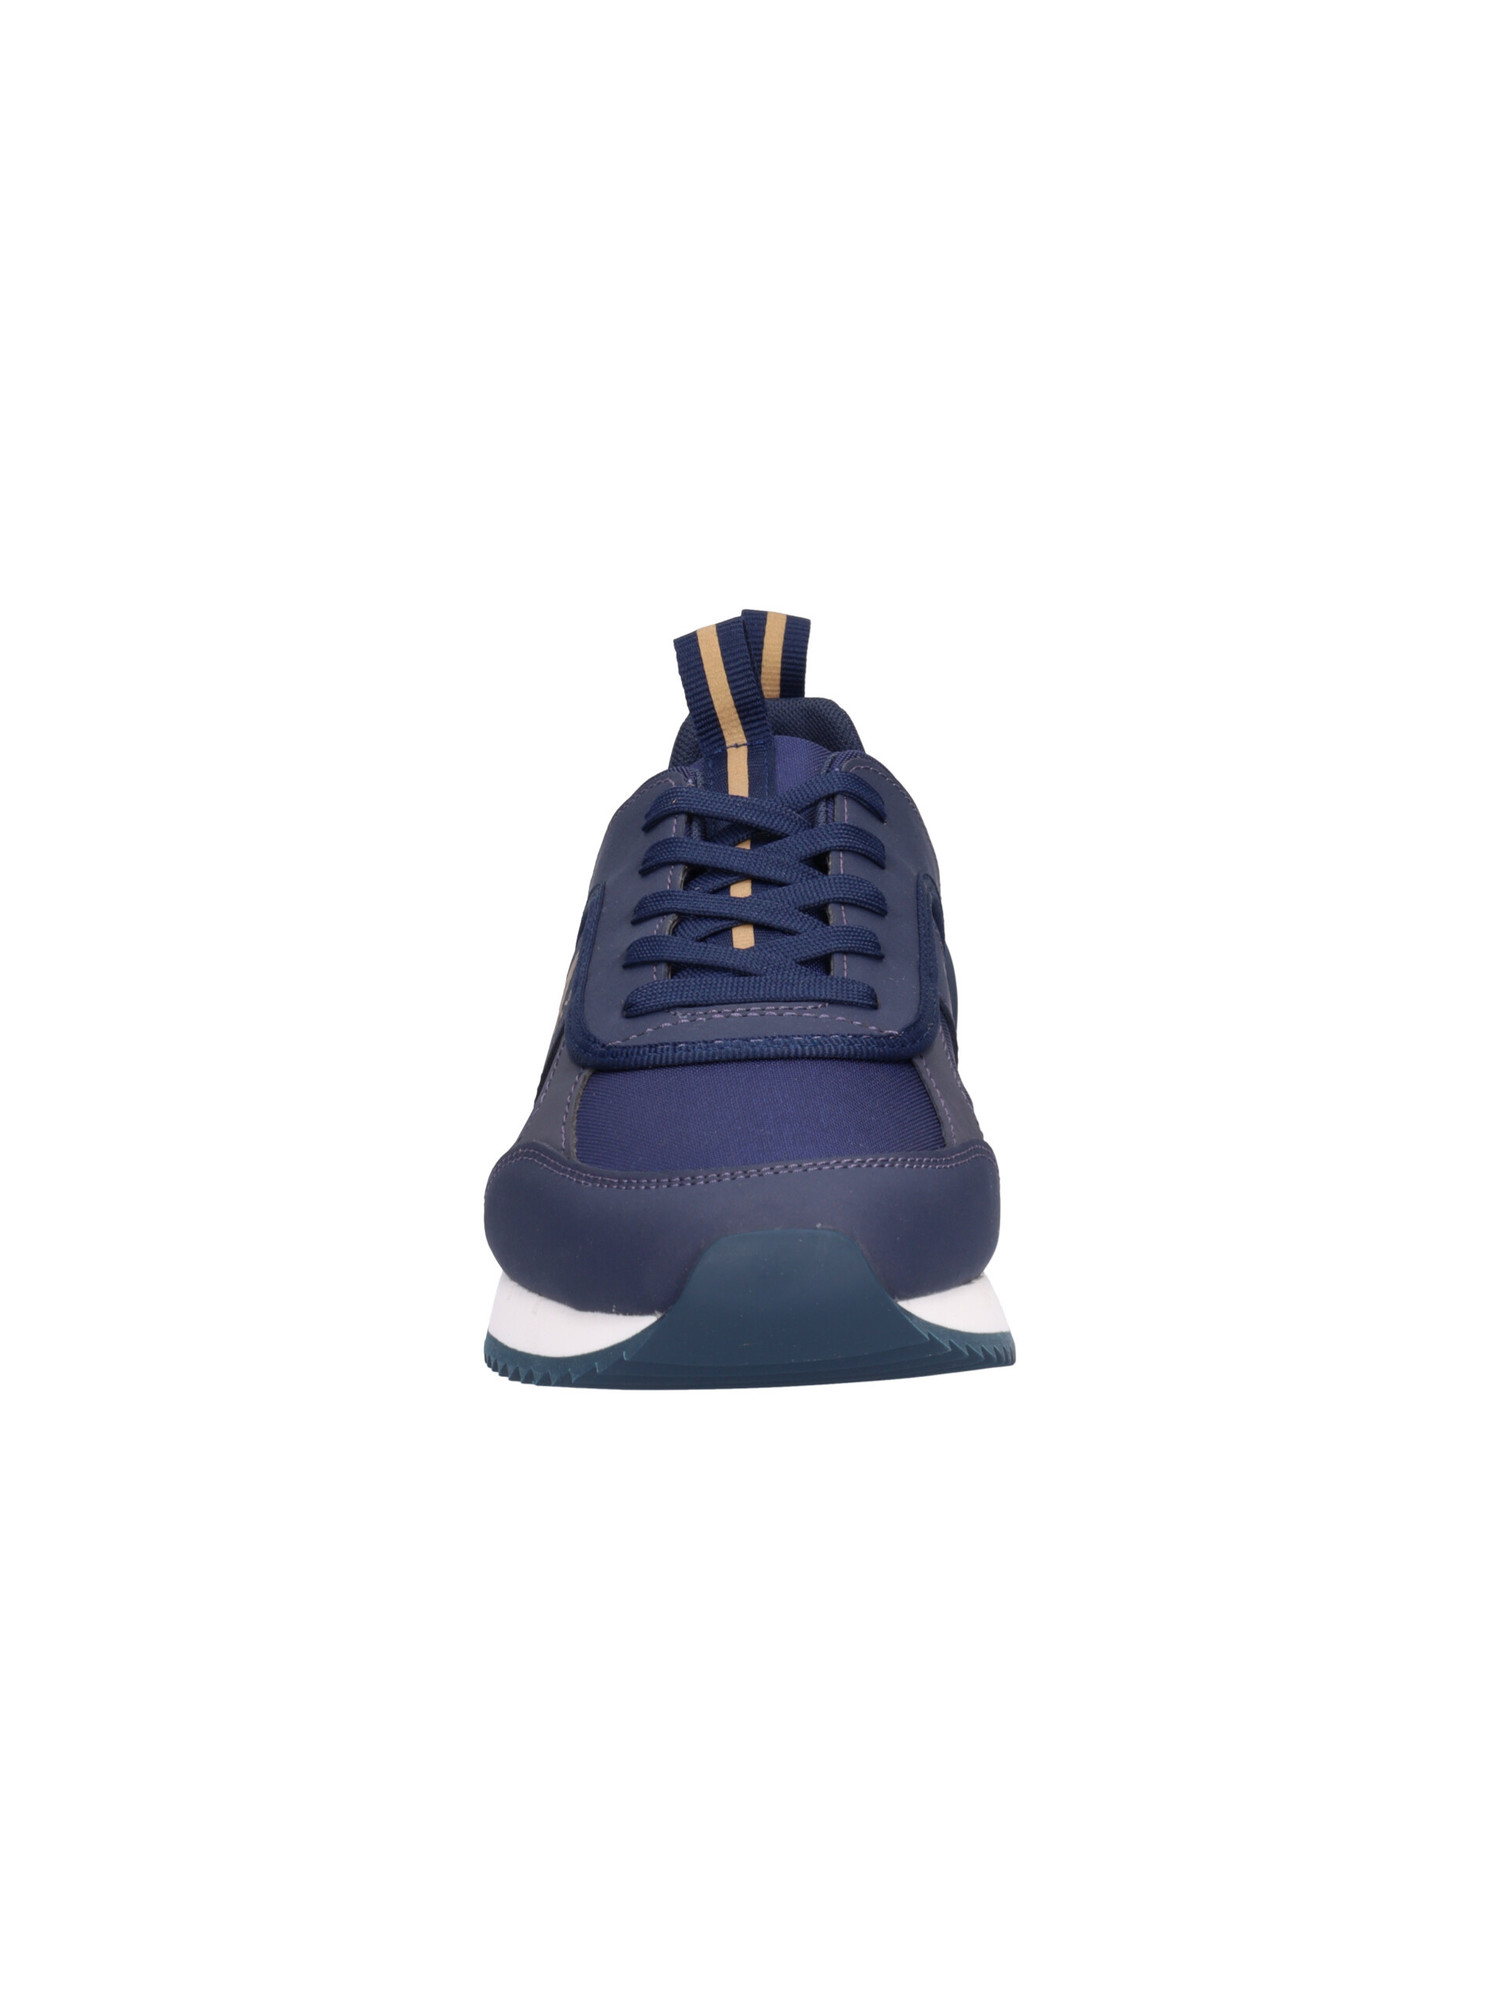 sneaker-emporio-armani-da-uomo-blu-5312b2